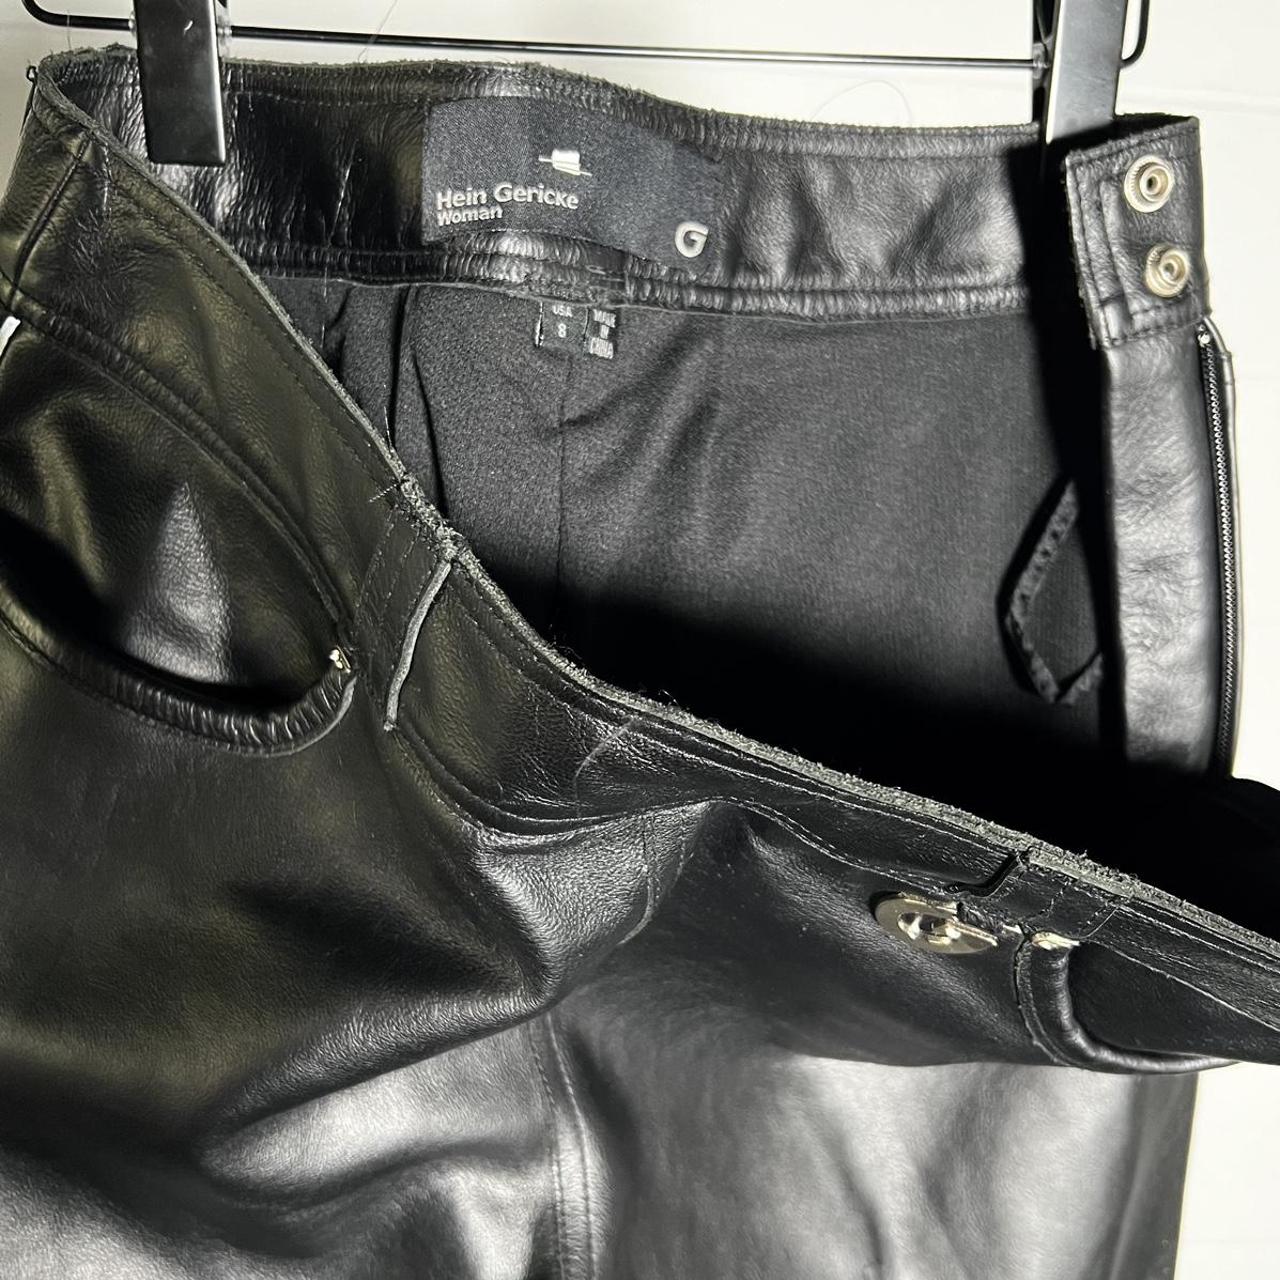 Hein Gericke Schnürlederjeans von 1995 | Mens leather clothing, Leather  fashion men, Leather fashion